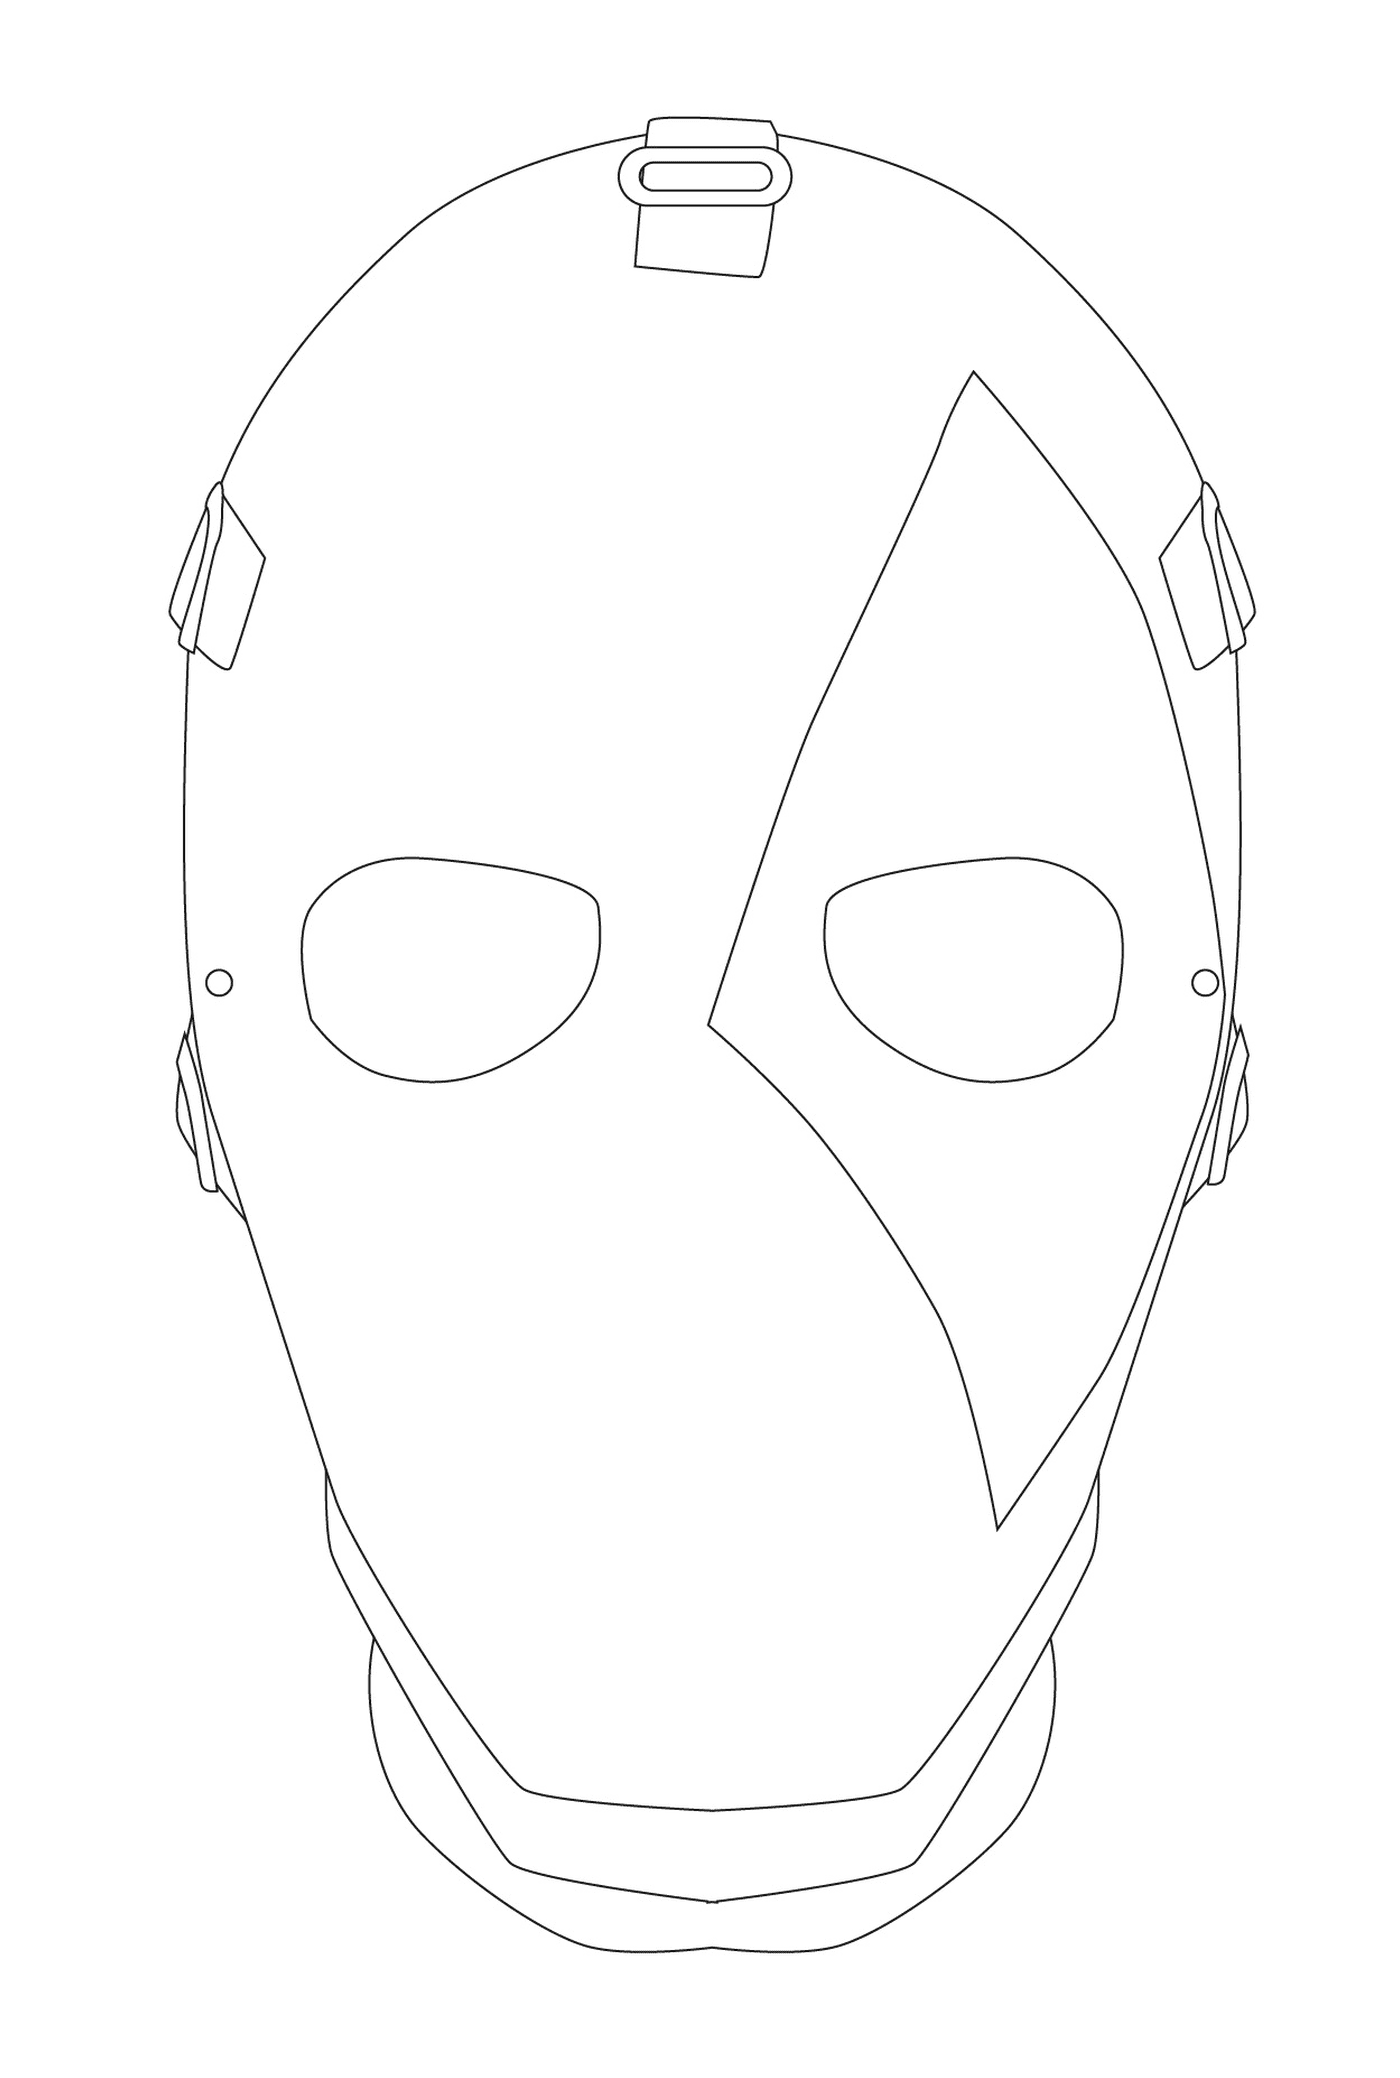  Фортнитная маска для окрашивания Джокера 